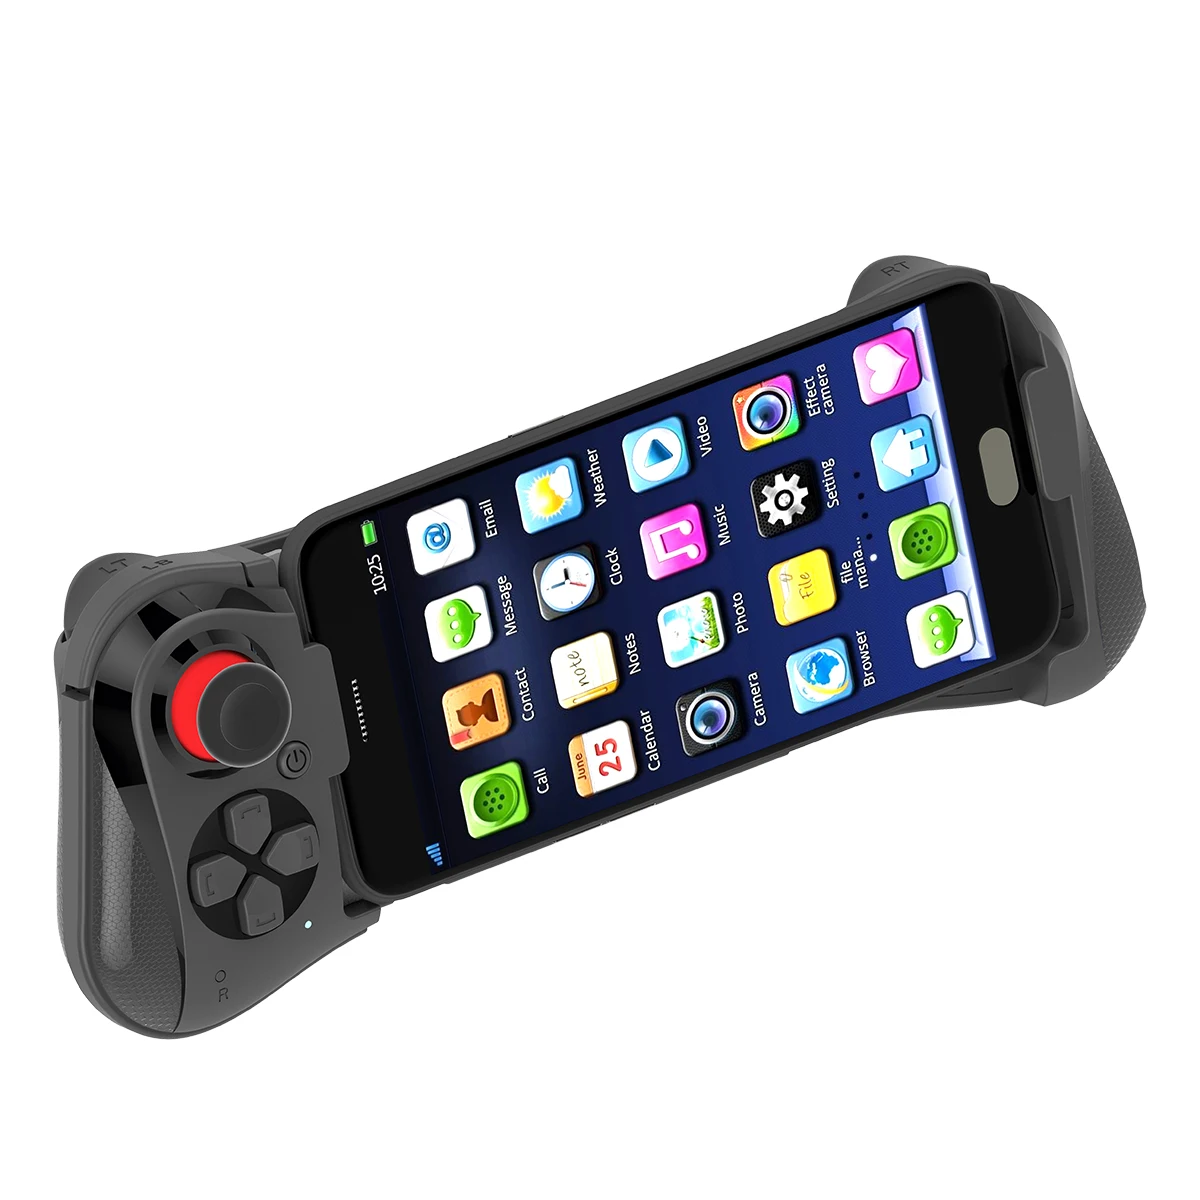 MOCUTE 058 Для xiaomi iphone XR 8 Android iOS VR PC tv box pugb мобильный телефон беспроводной bluetooth игровой контроллер Джойстик Геймпад